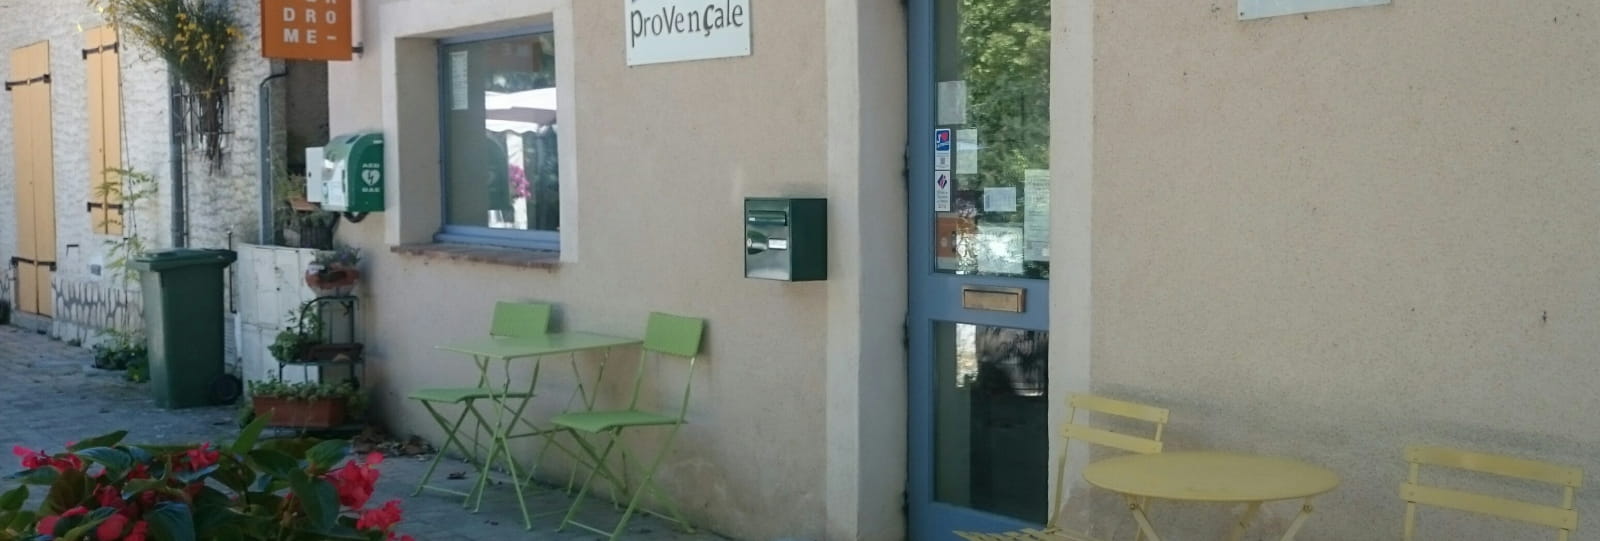 Office de tourisme des Baronnies en Drôme Provençale - Pays de Rémuzat